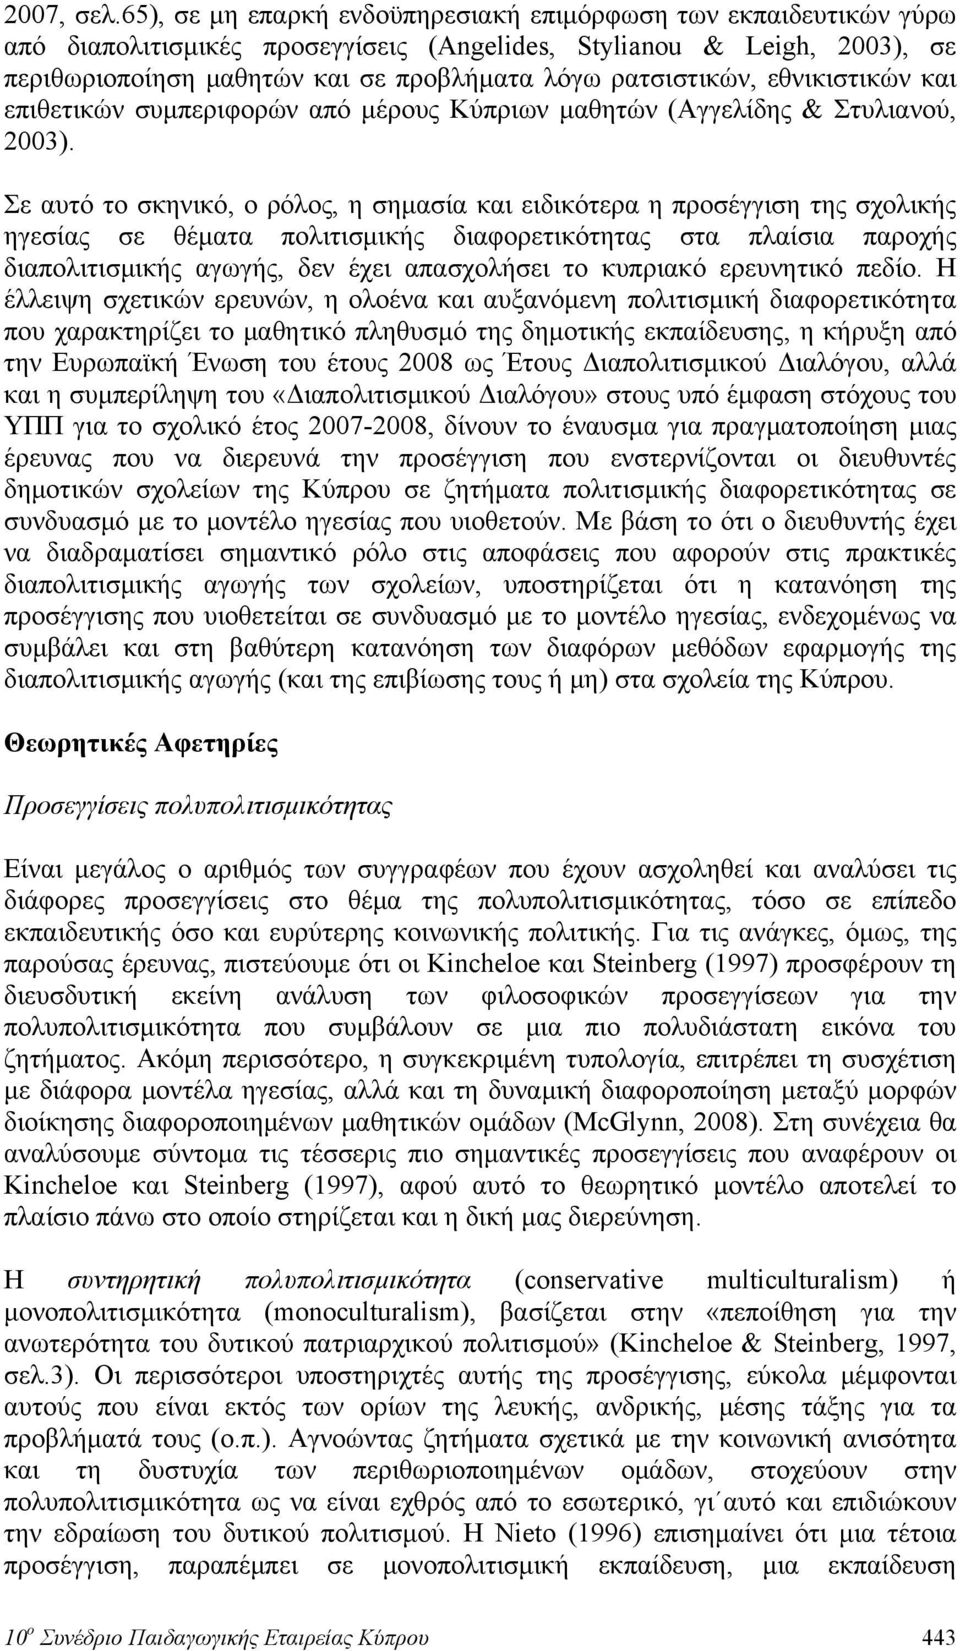 ρατσιστικών, εθνικιστικών και επιθετικών συμπεριφορών από μέρους Κύπριων μαθητών (Αγγελίδης & Στυλιανού, 2003).